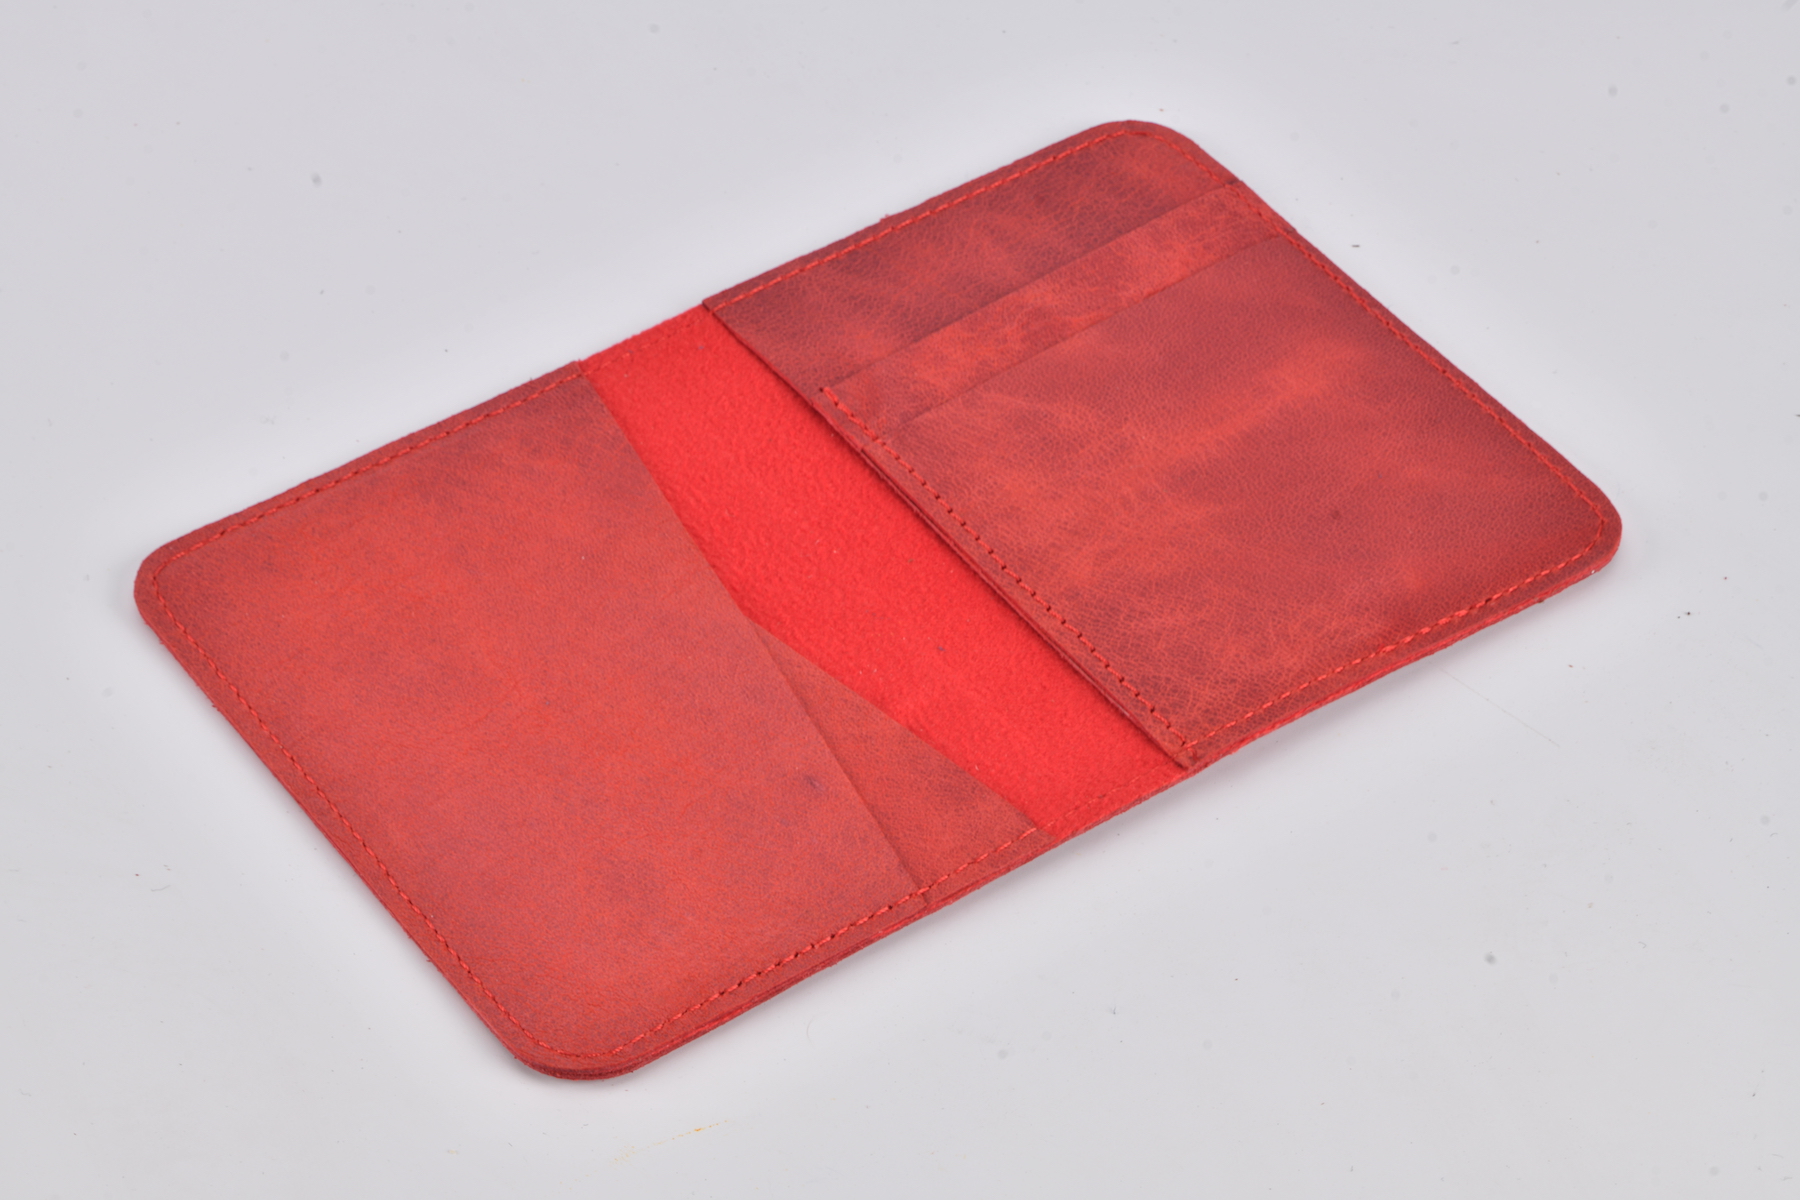 Swiss Wallet - Maple Red